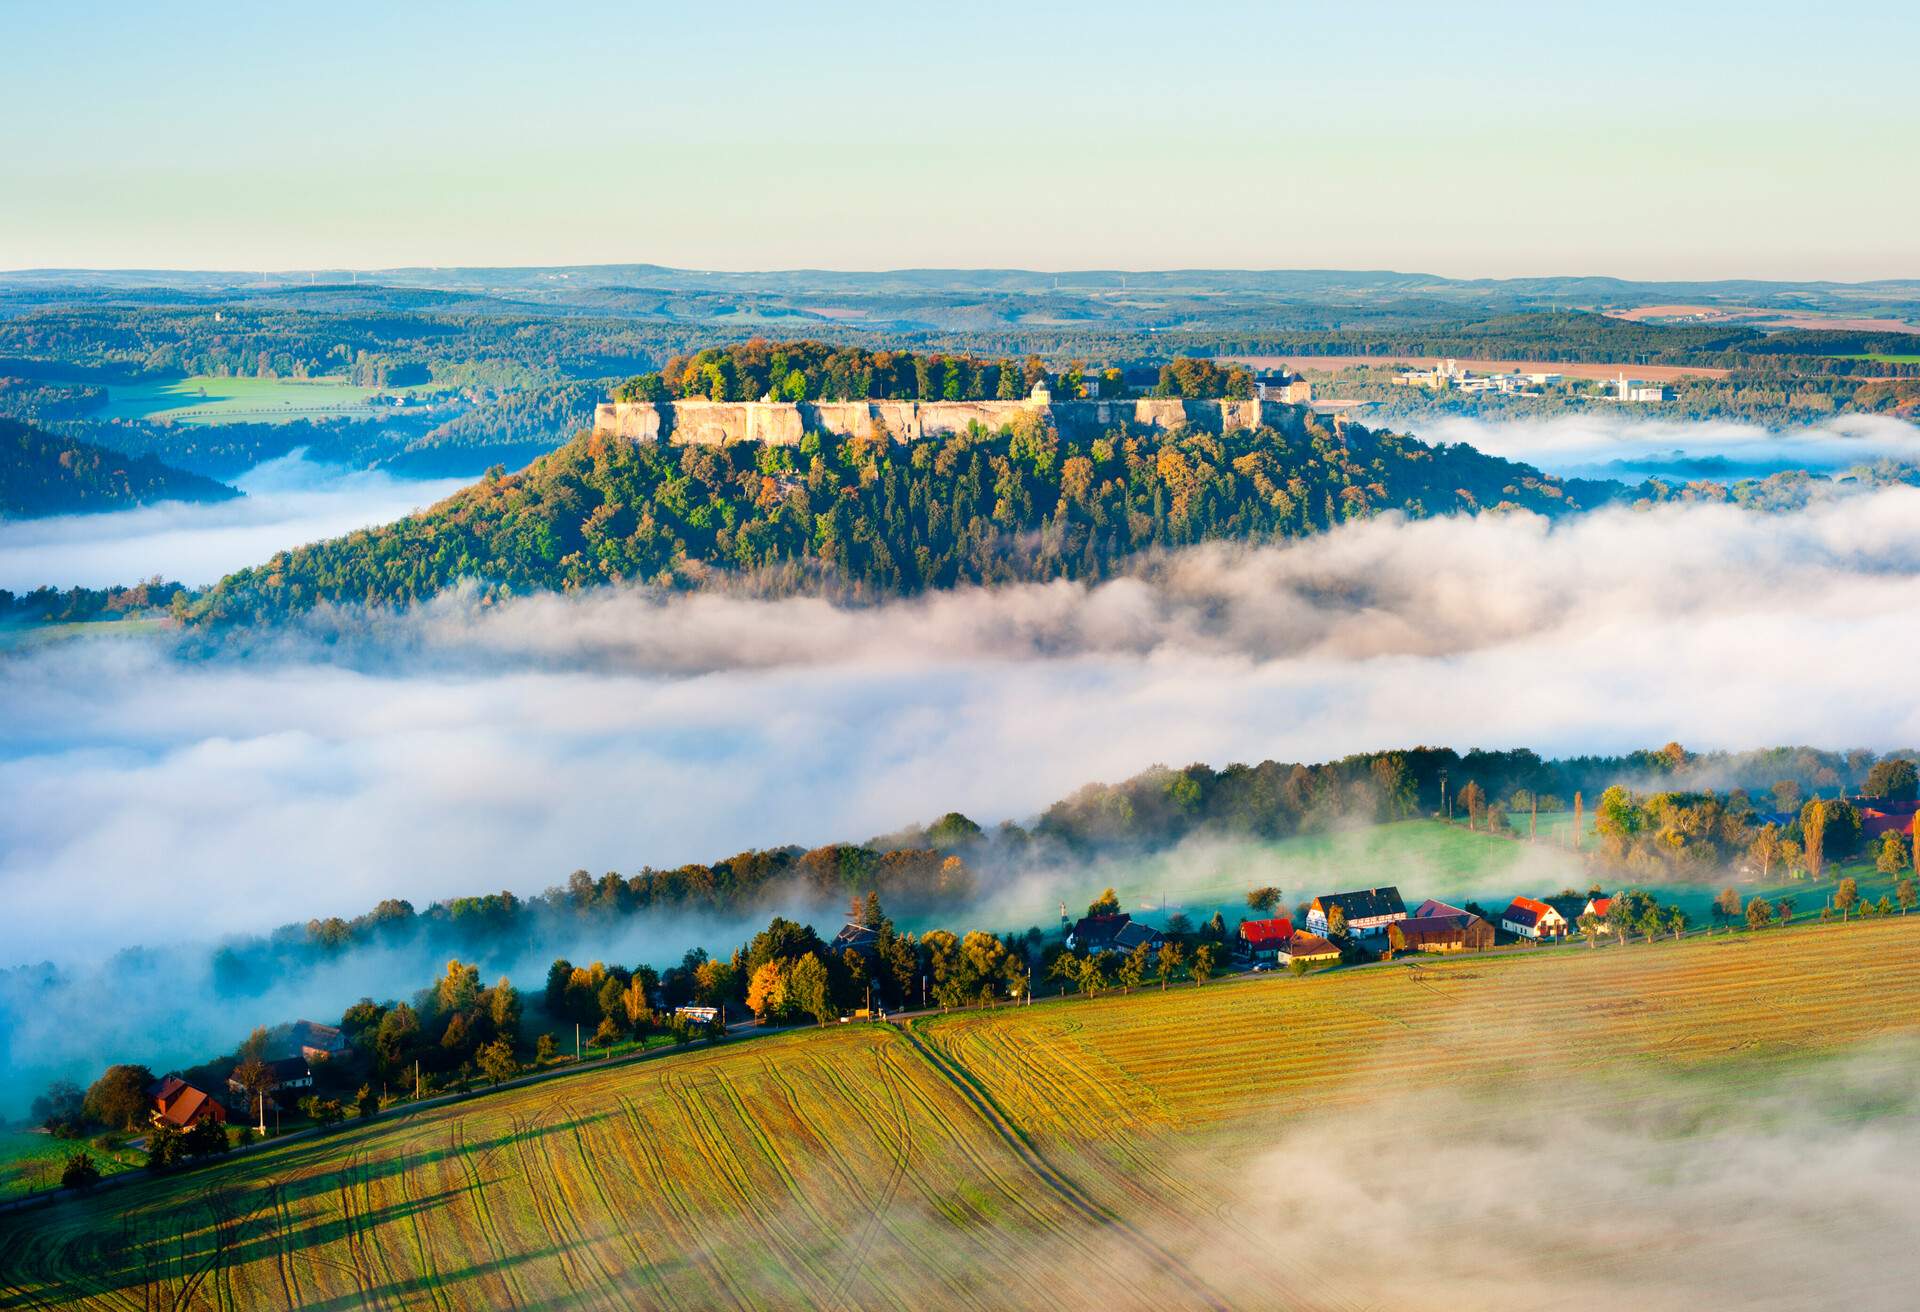 festung königstein at dawn, famous castle in saxon switzerland elbsandsteingebirge, germany, mist over elbe valley